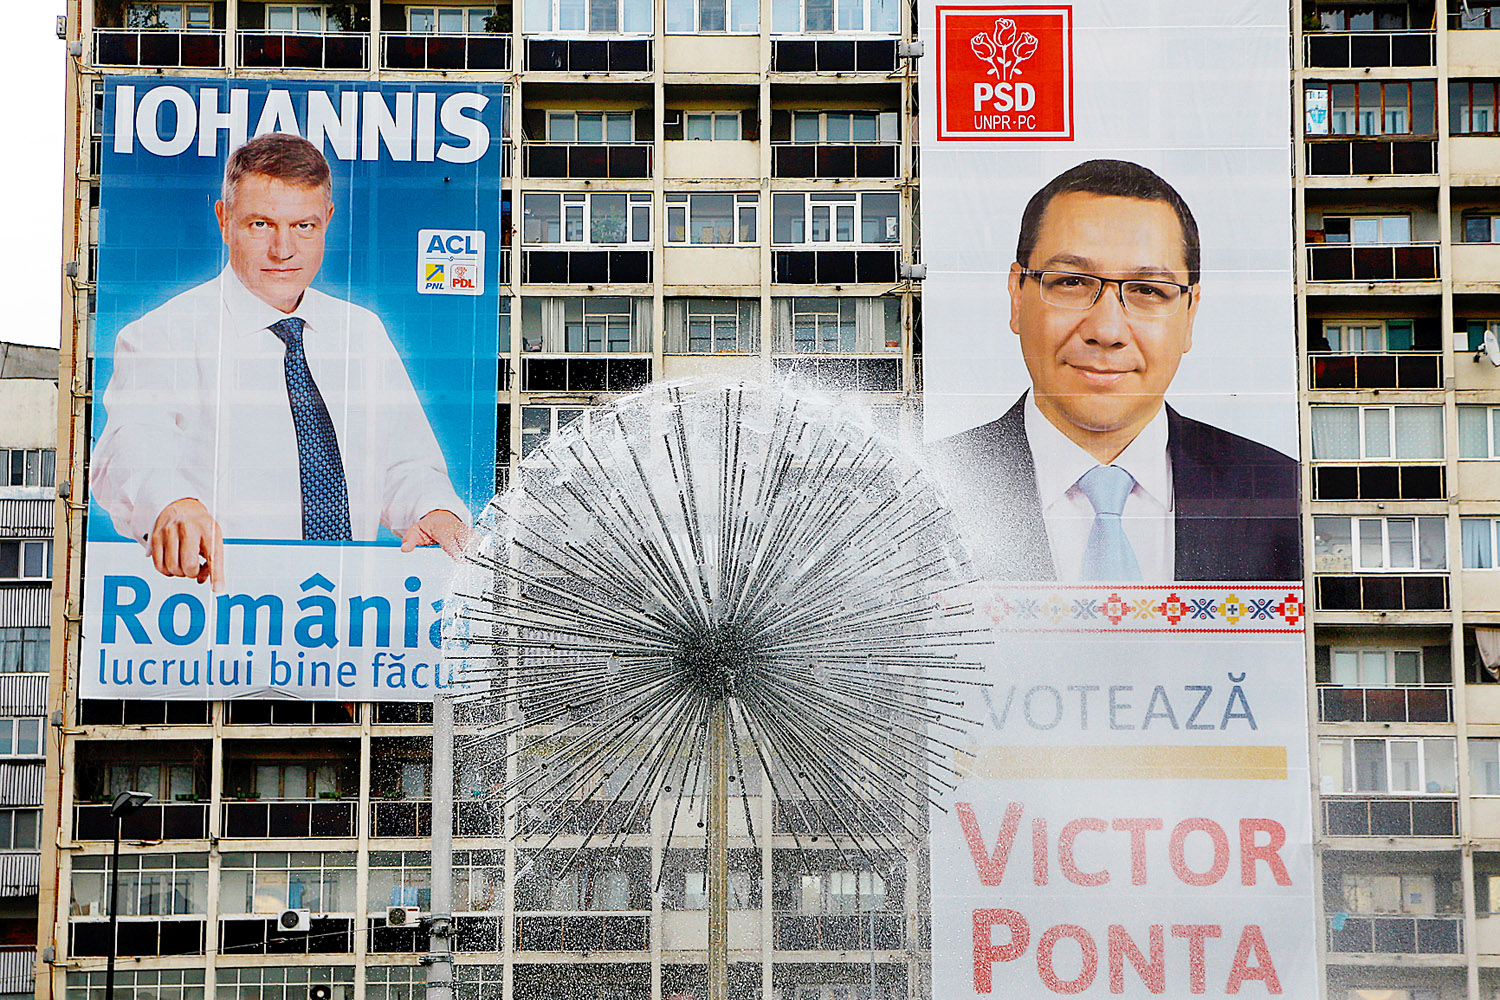 Johannis és Ponta választási plakátja Bukarestben